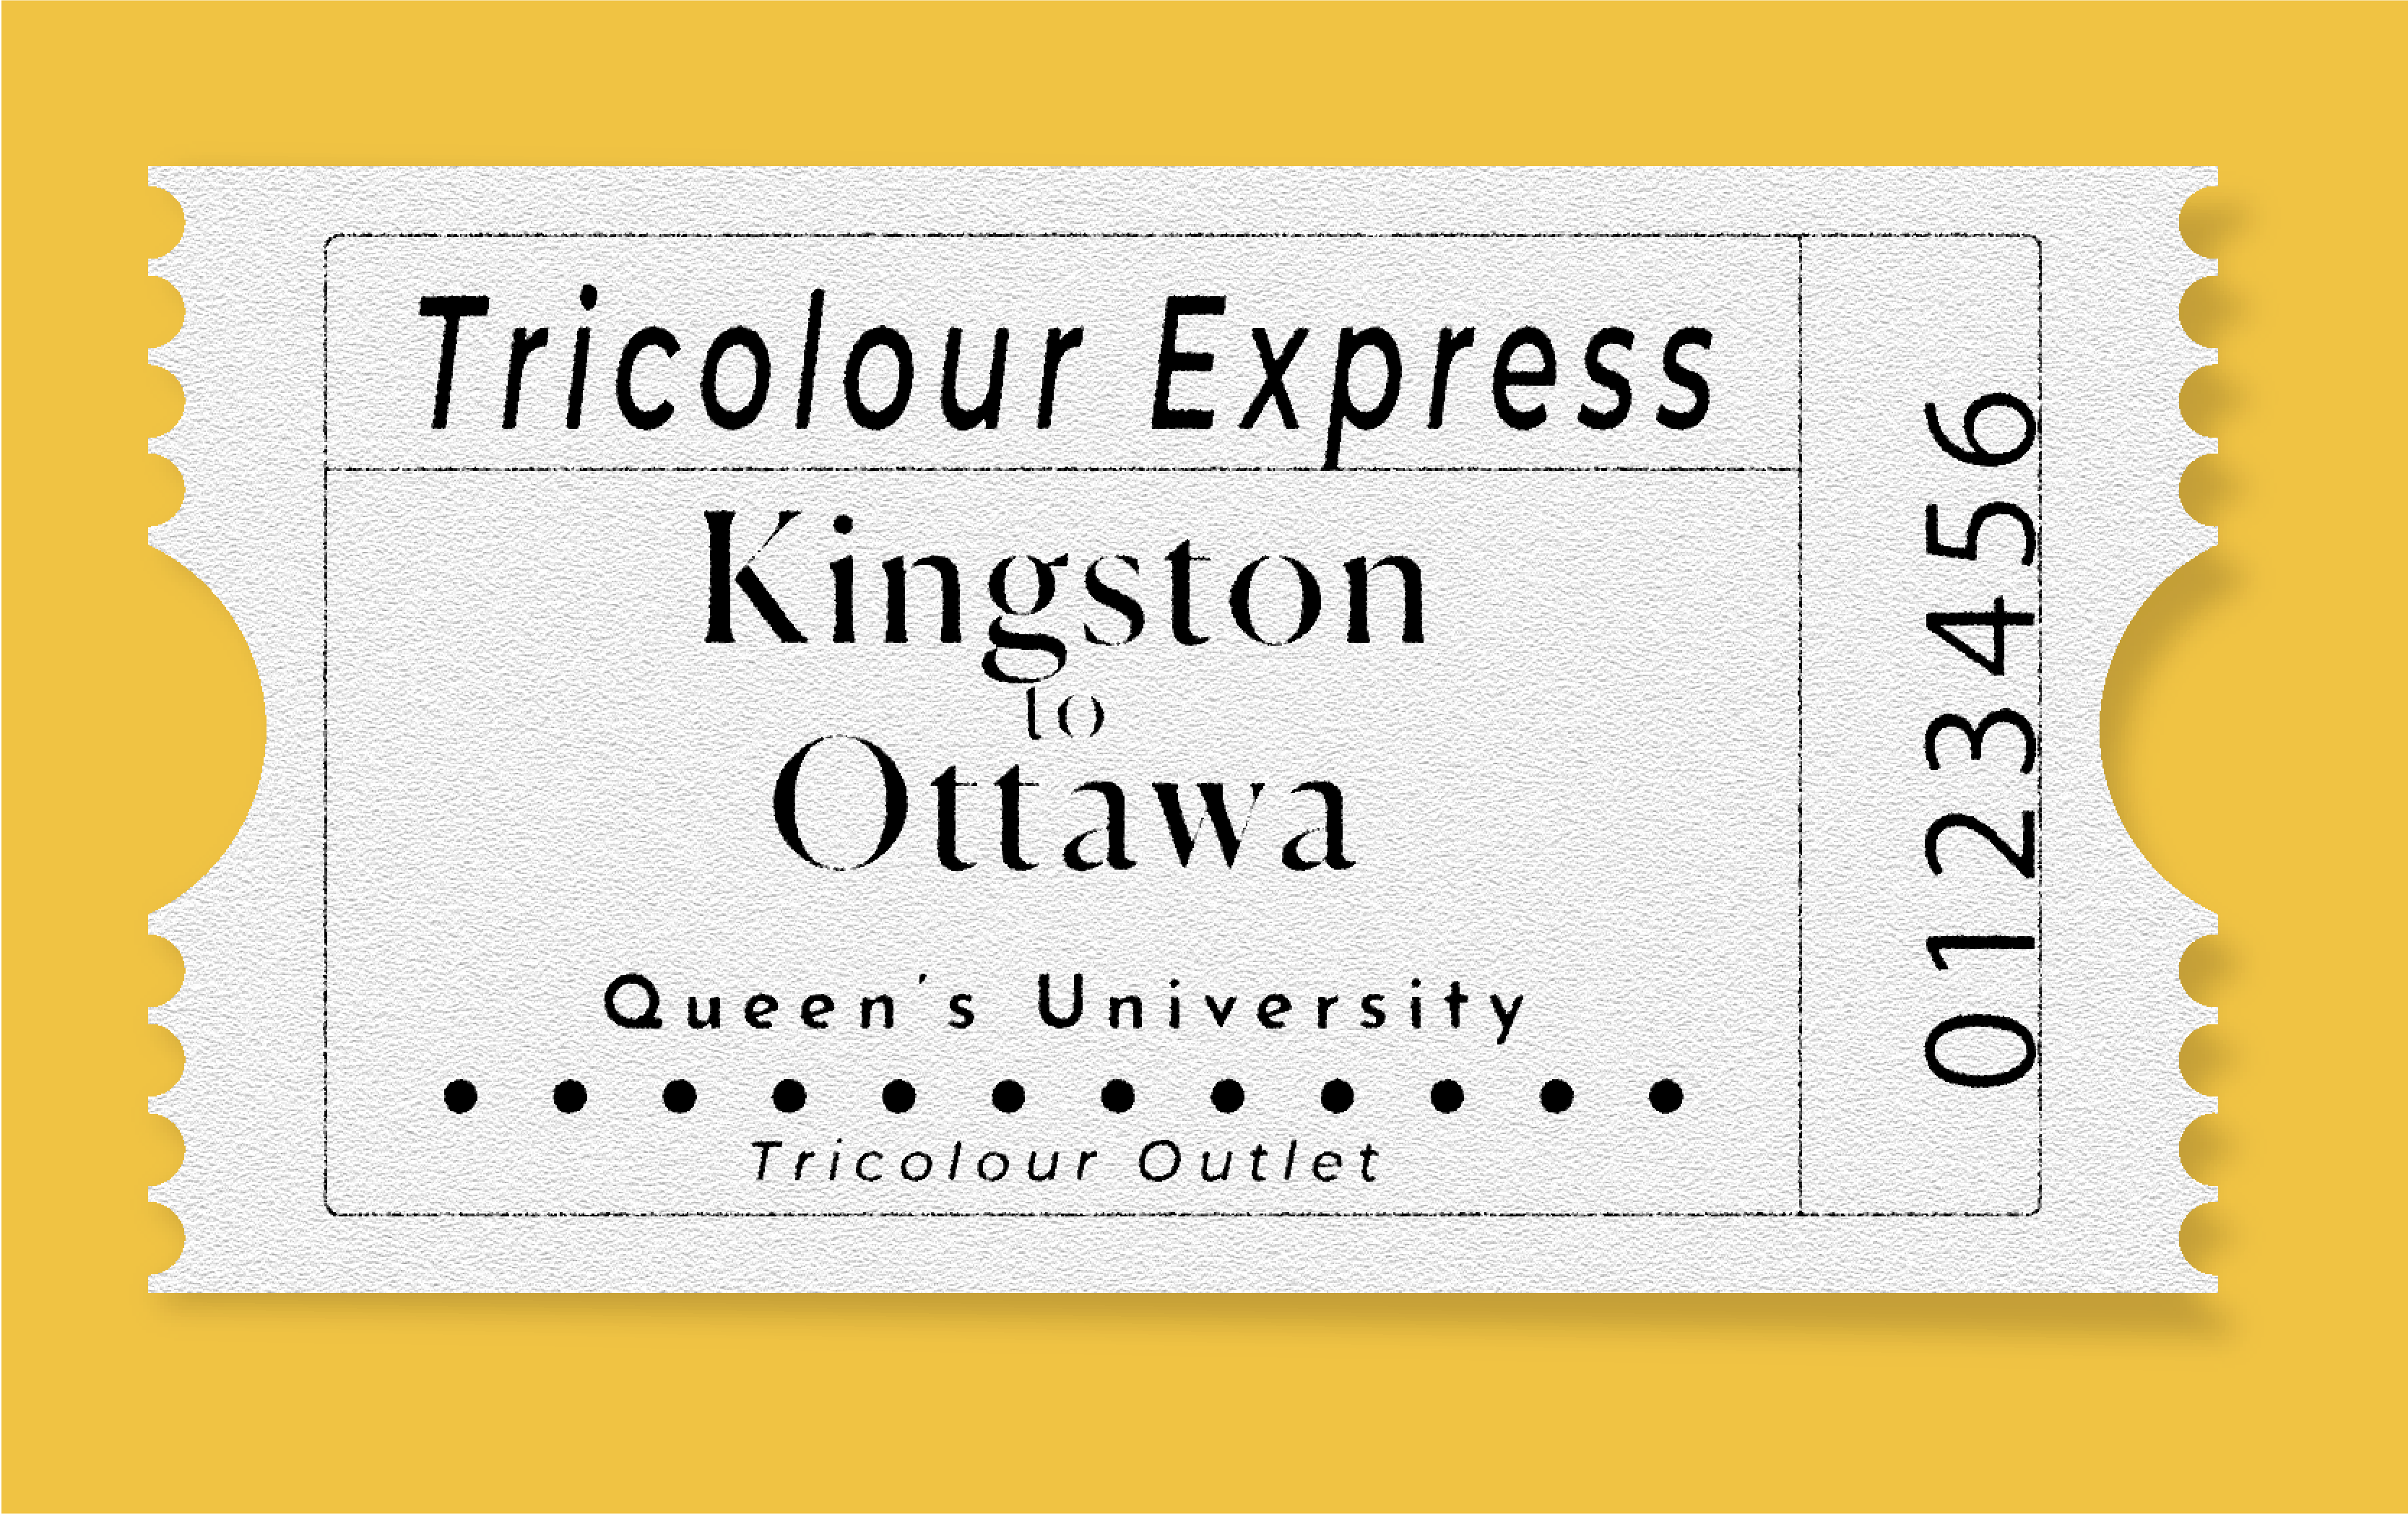 Tricolour Express: Kingston to Ottawa